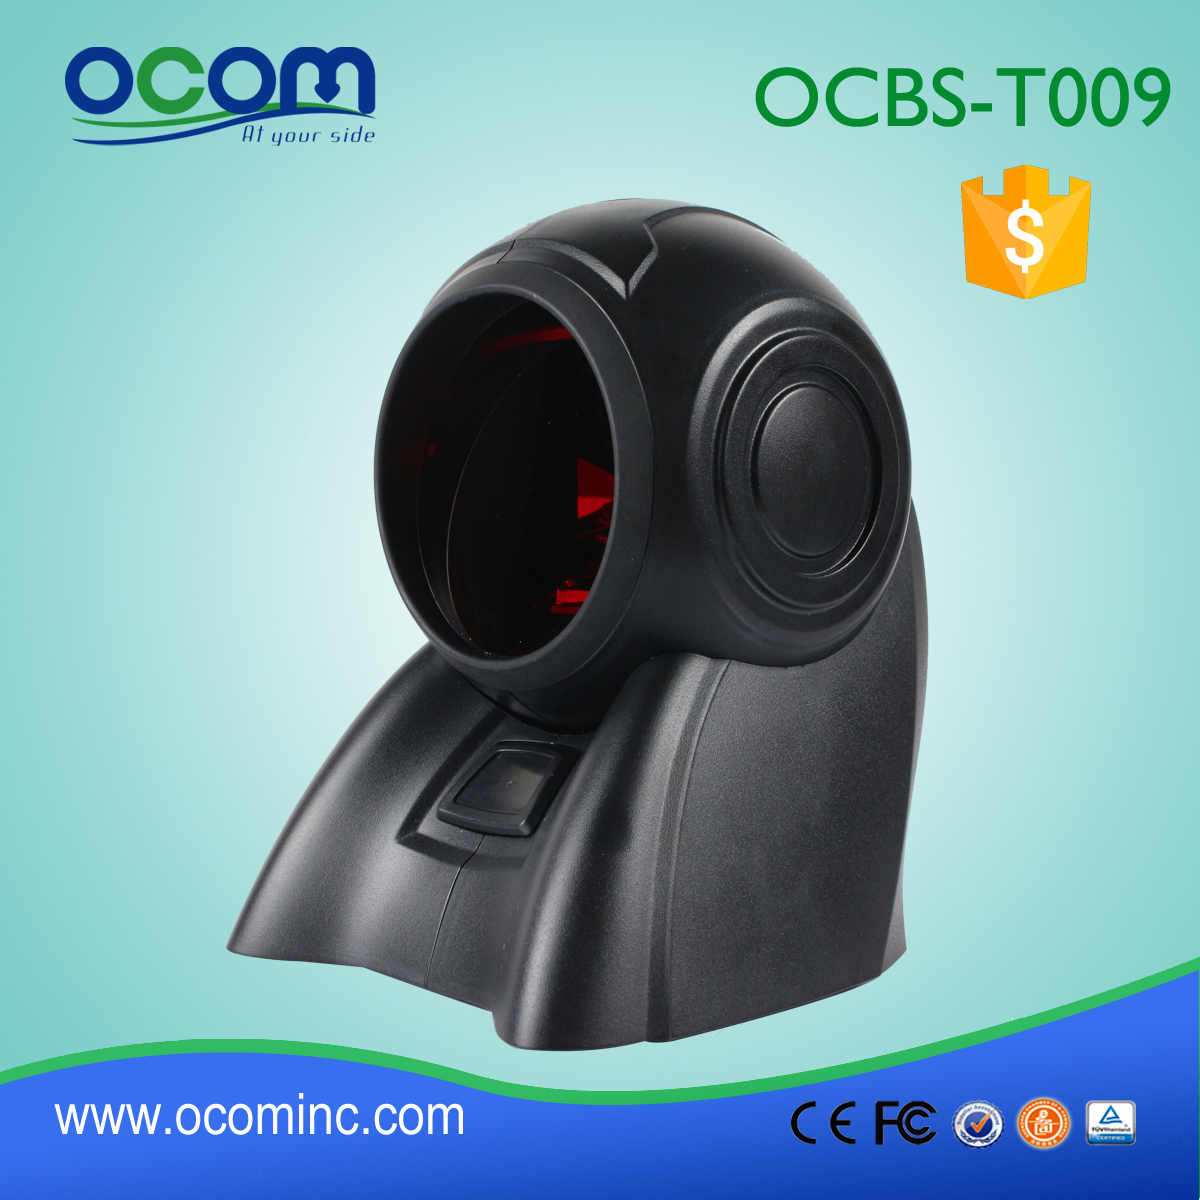 ζεστό usb προμηθευτή Omni σαρωτή γραμμωτού κώδικα, φθηνότερη Omni 1δ το barcode scanner